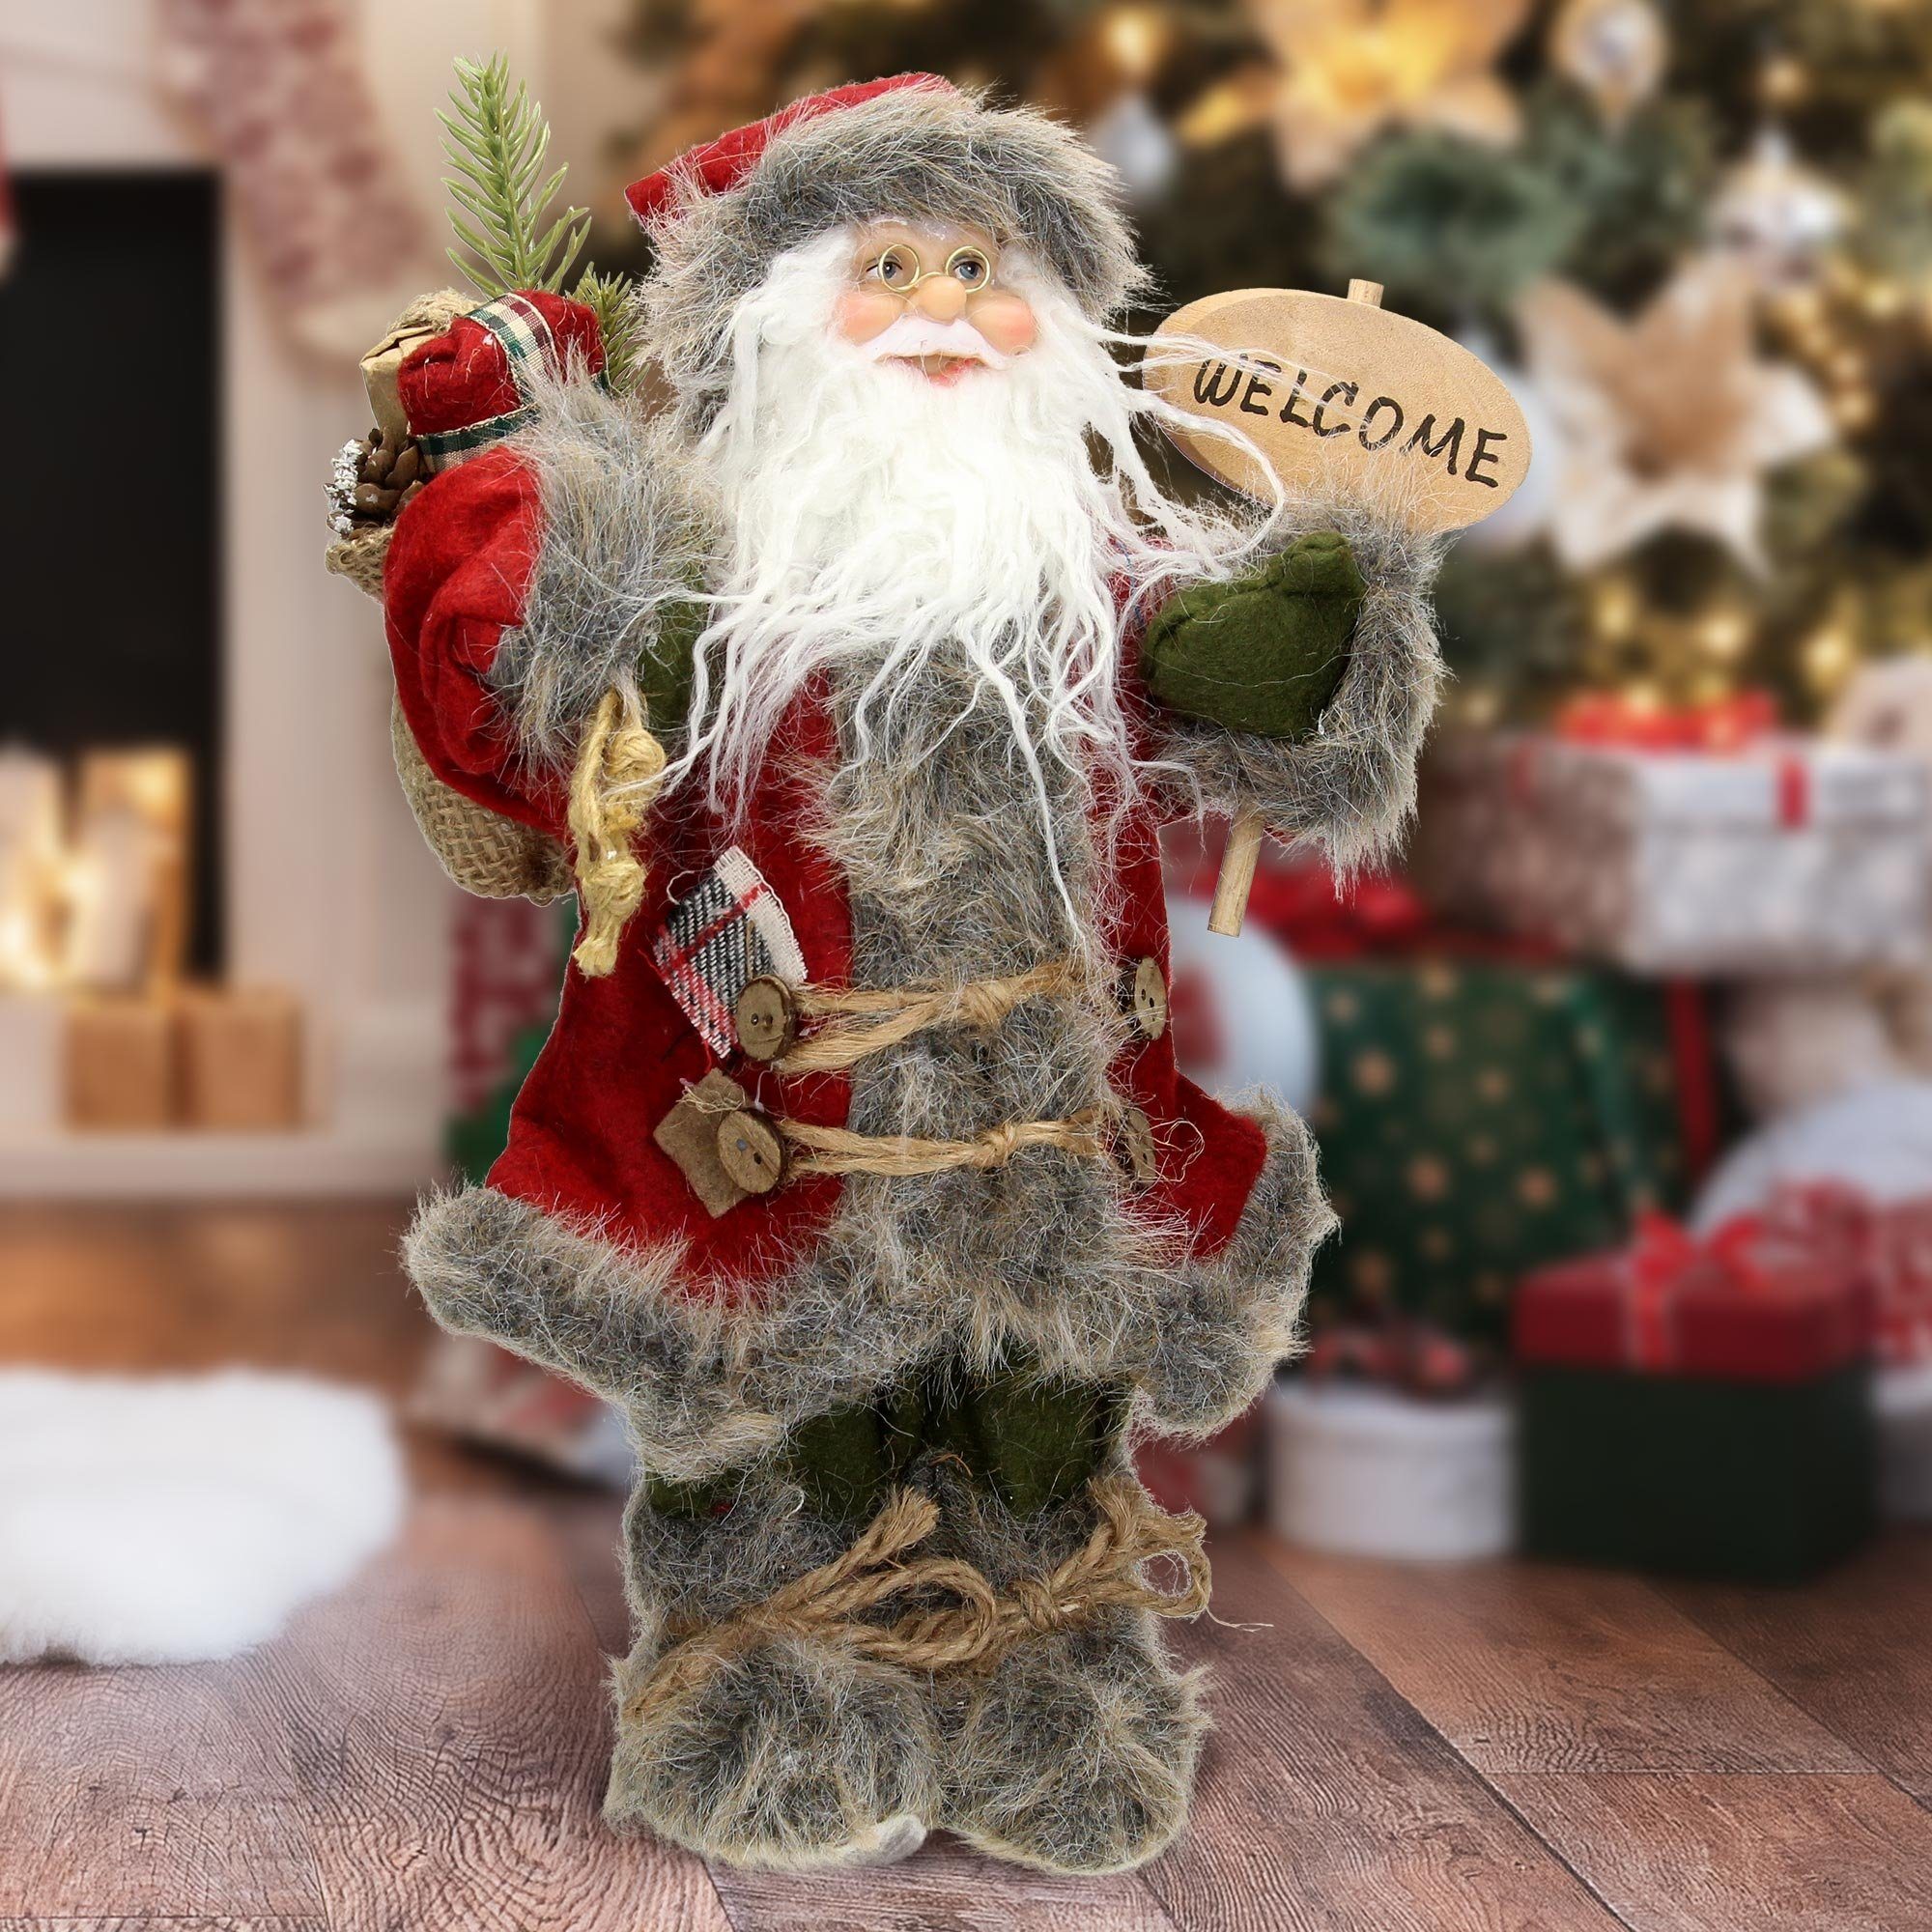 Homevibes ECD Germany Weihnachtsfigur Weihnachtsmann Deko-Figur Santa-Claus Figur Winterdeko Weihnachten, 37 cm hoch rot/grauer Mantel grüner Hose mit Geschenkesack